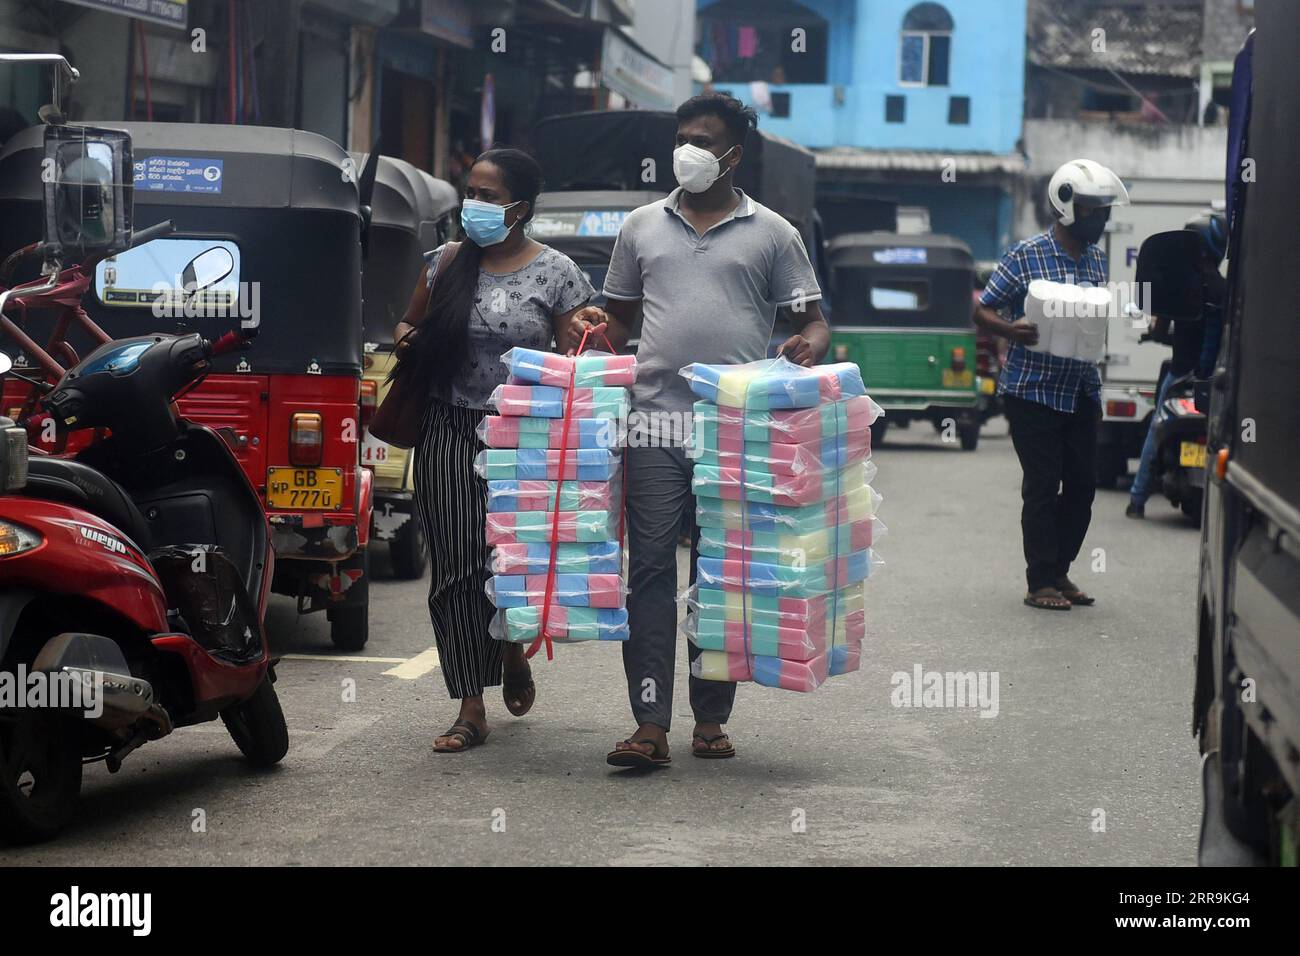 210621 -- COLOMBO, 21. Juni 2021 -- Menschen transportieren Waren auf einem Markt in Colombo, Sri Lanka, am 21. Juni 2021. Die Behörden Sri Lankas haben am Montag vorübergehend eine landesweite Reisebeschränkung aufgehoben, die im Mai verhängt wurde, um wesentliche Arbeit der Menschen zu ermöglichen. Foto von /Xinhua SRI LANKA-COLOMBO-TRAVEL RESTRICTION-TEMPORARY REMOVAL GayanxSameera PUBLICATIONxNOTxINxCHN Stockfoto